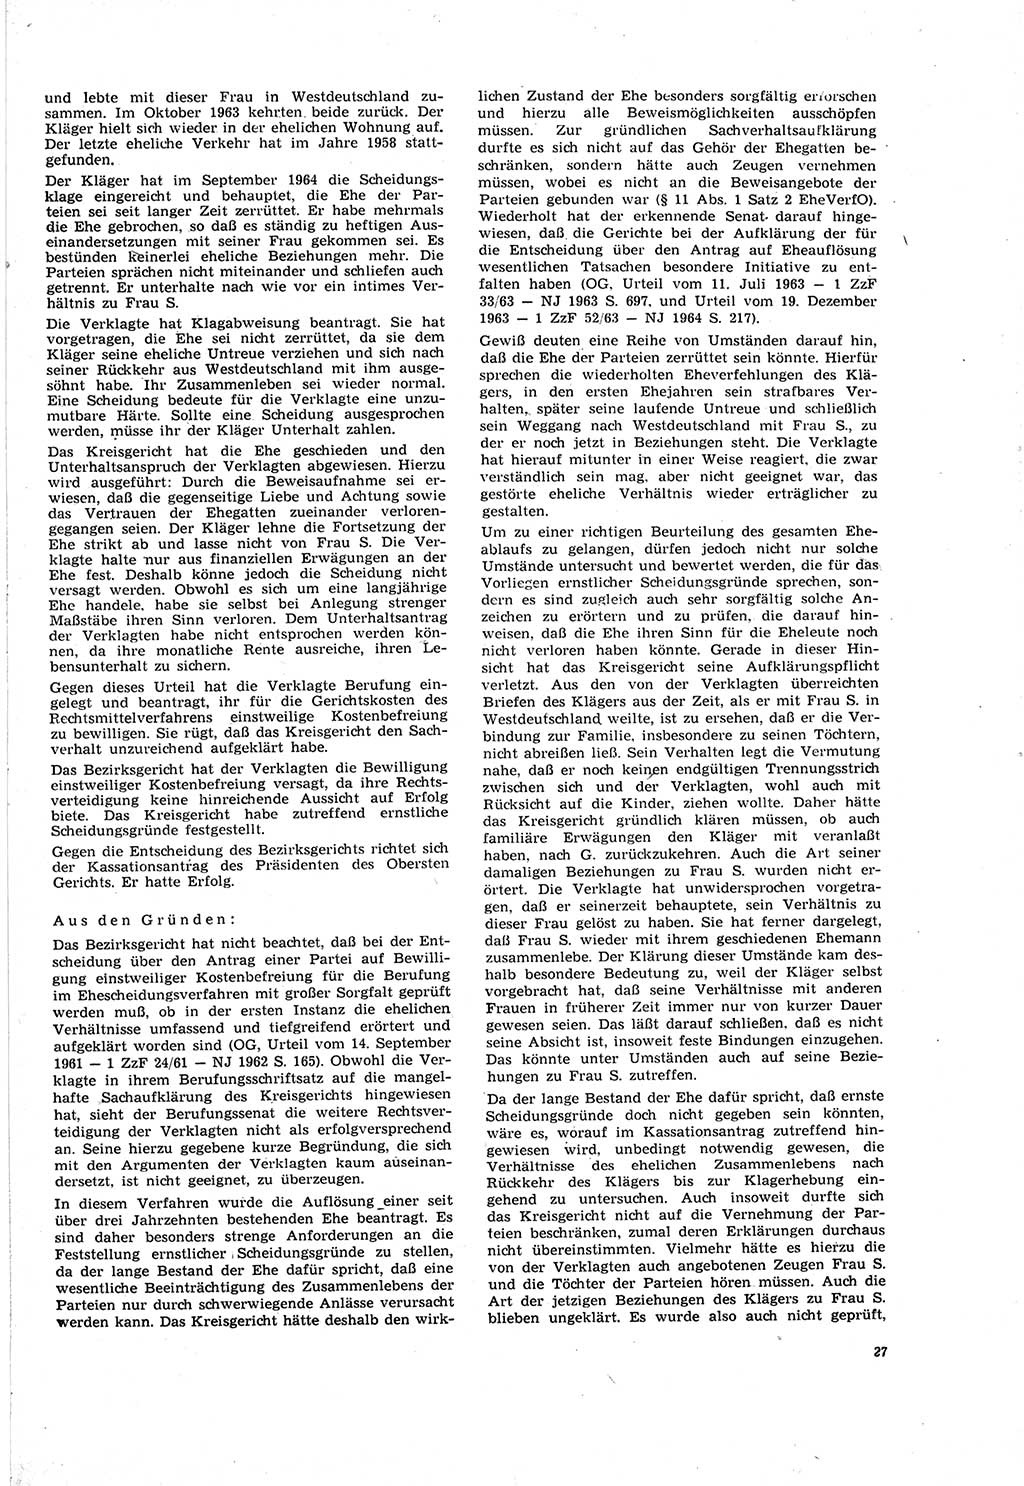 Neue Justiz (NJ), Zeitschrift für Recht und Rechtswissenschaft [Deutsche Demokratische Republik (DDR)], 20. Jahrgang 1966, Seite 27 (NJ DDR 1966, S. 27)